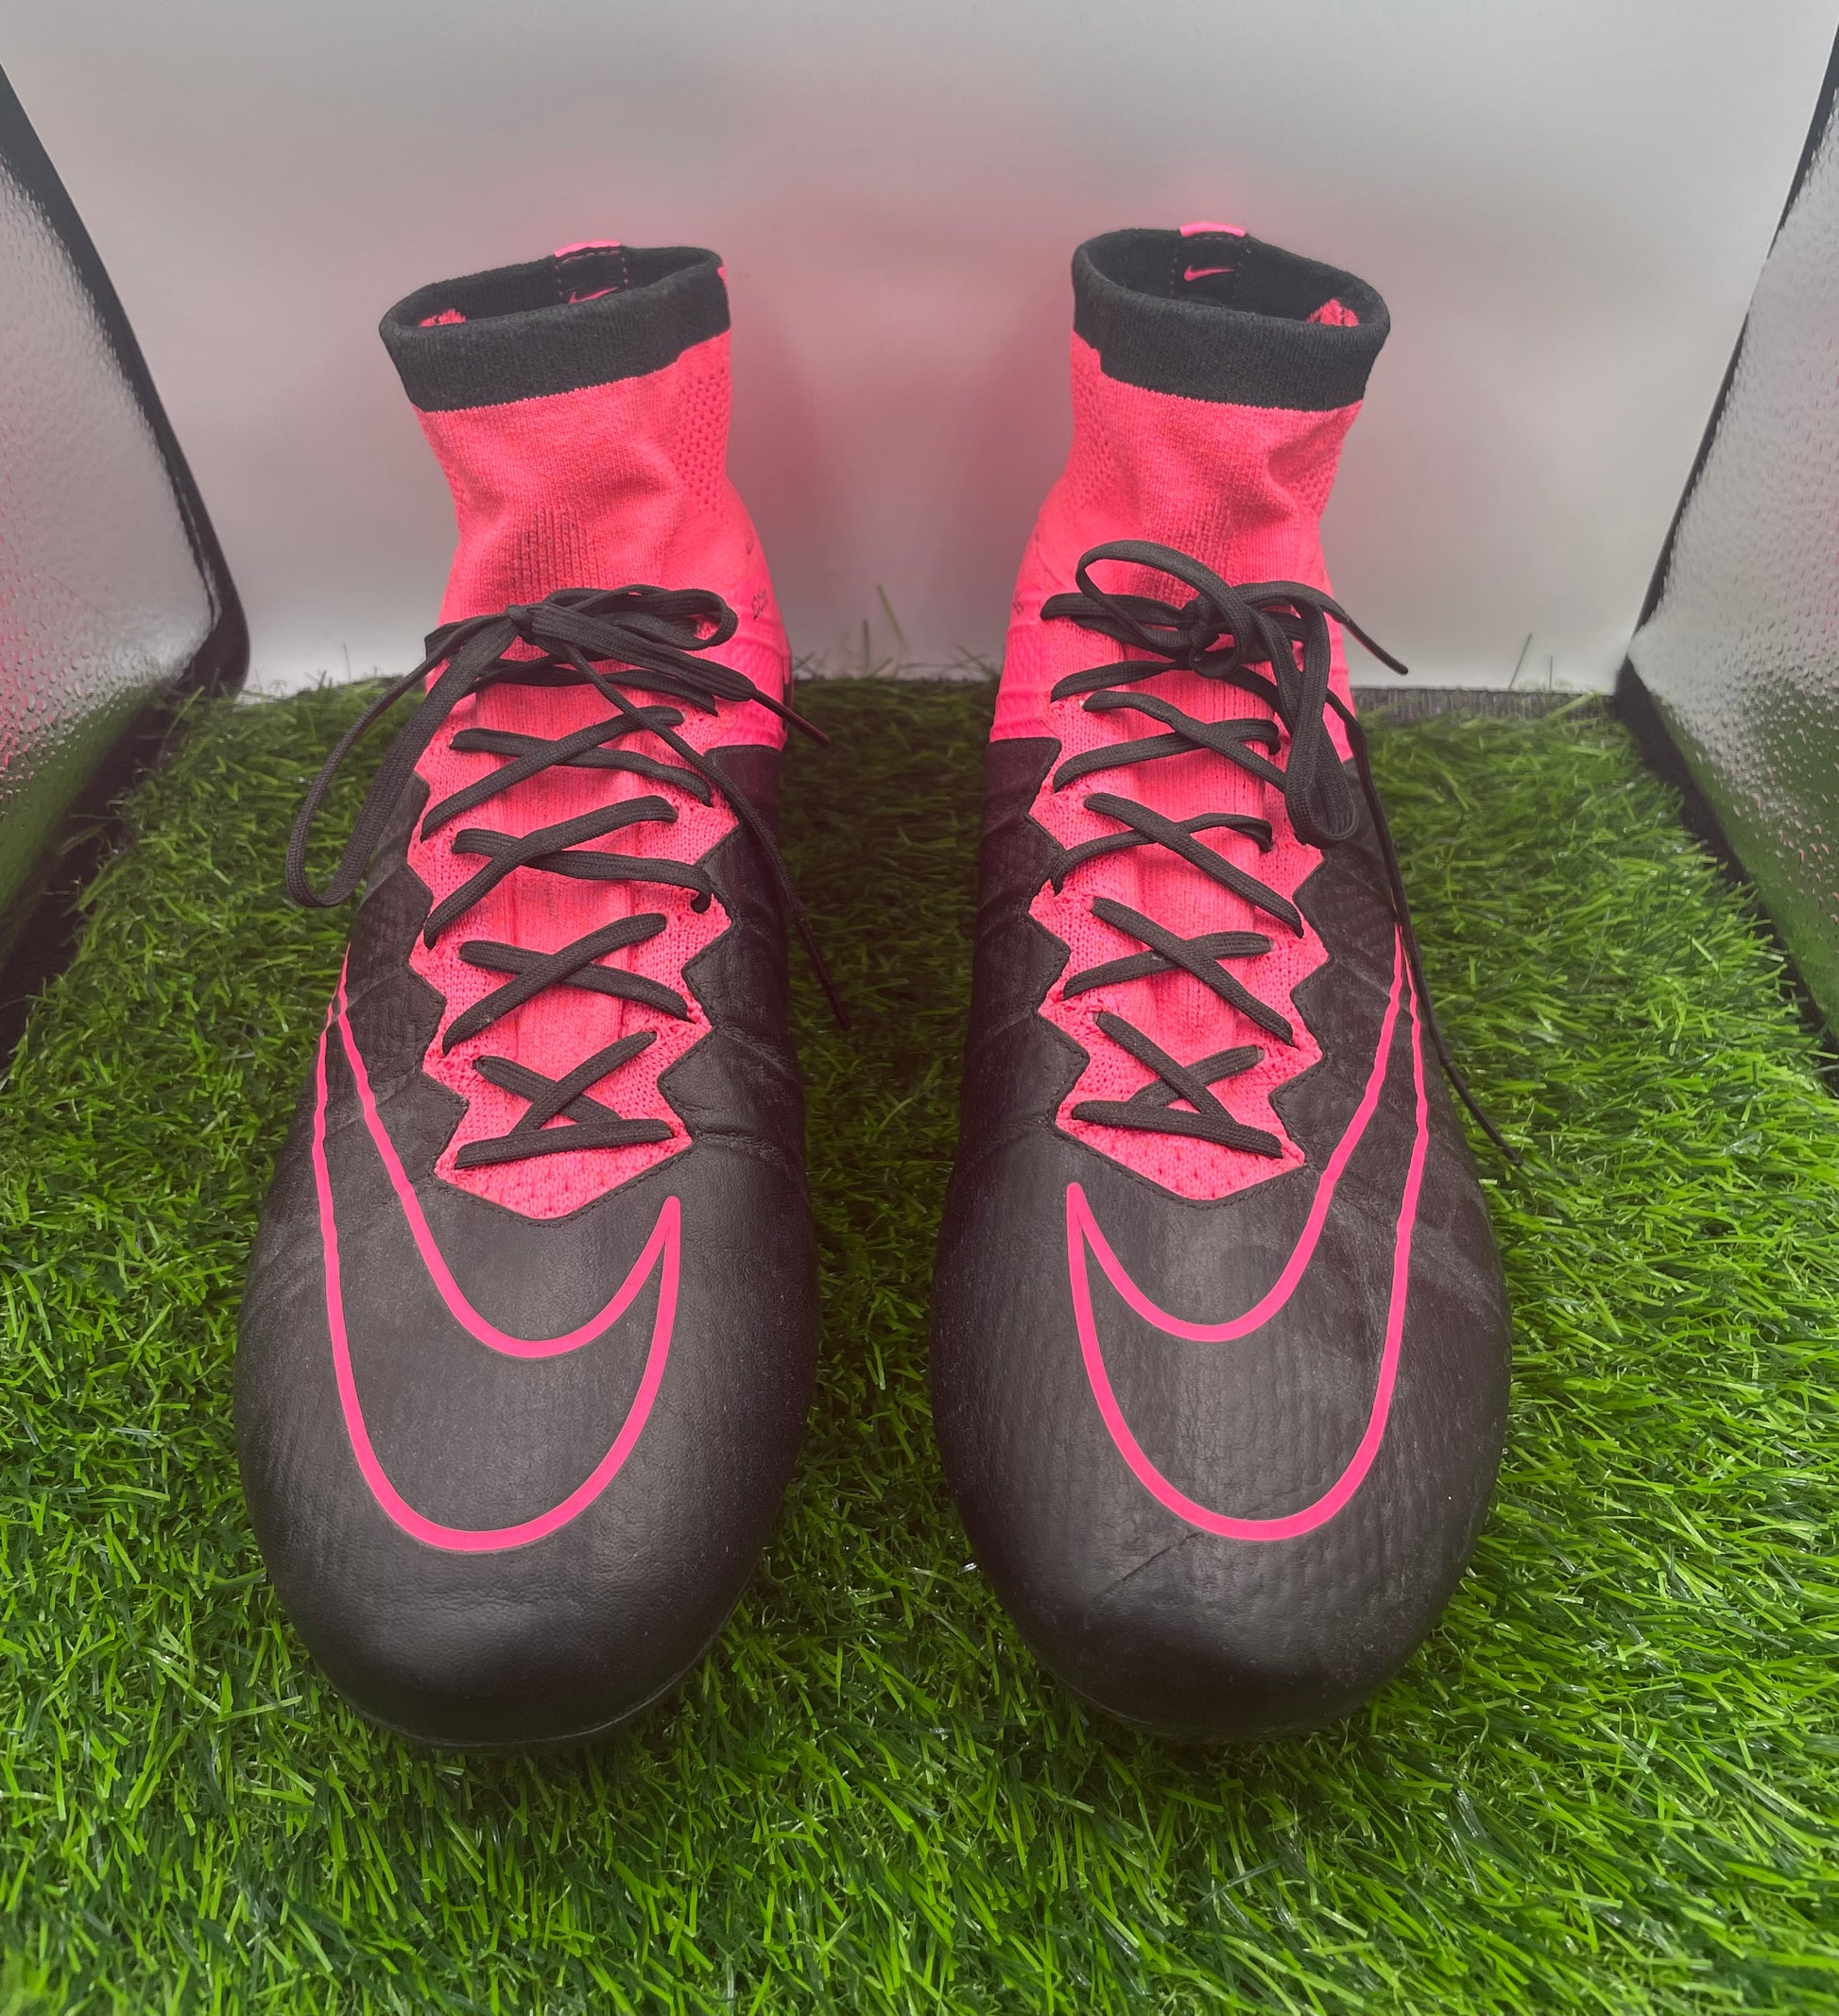 samenwerken Haarzelf bestrating Nike mercurial superfly 3 pink/black SG – Beyond boots